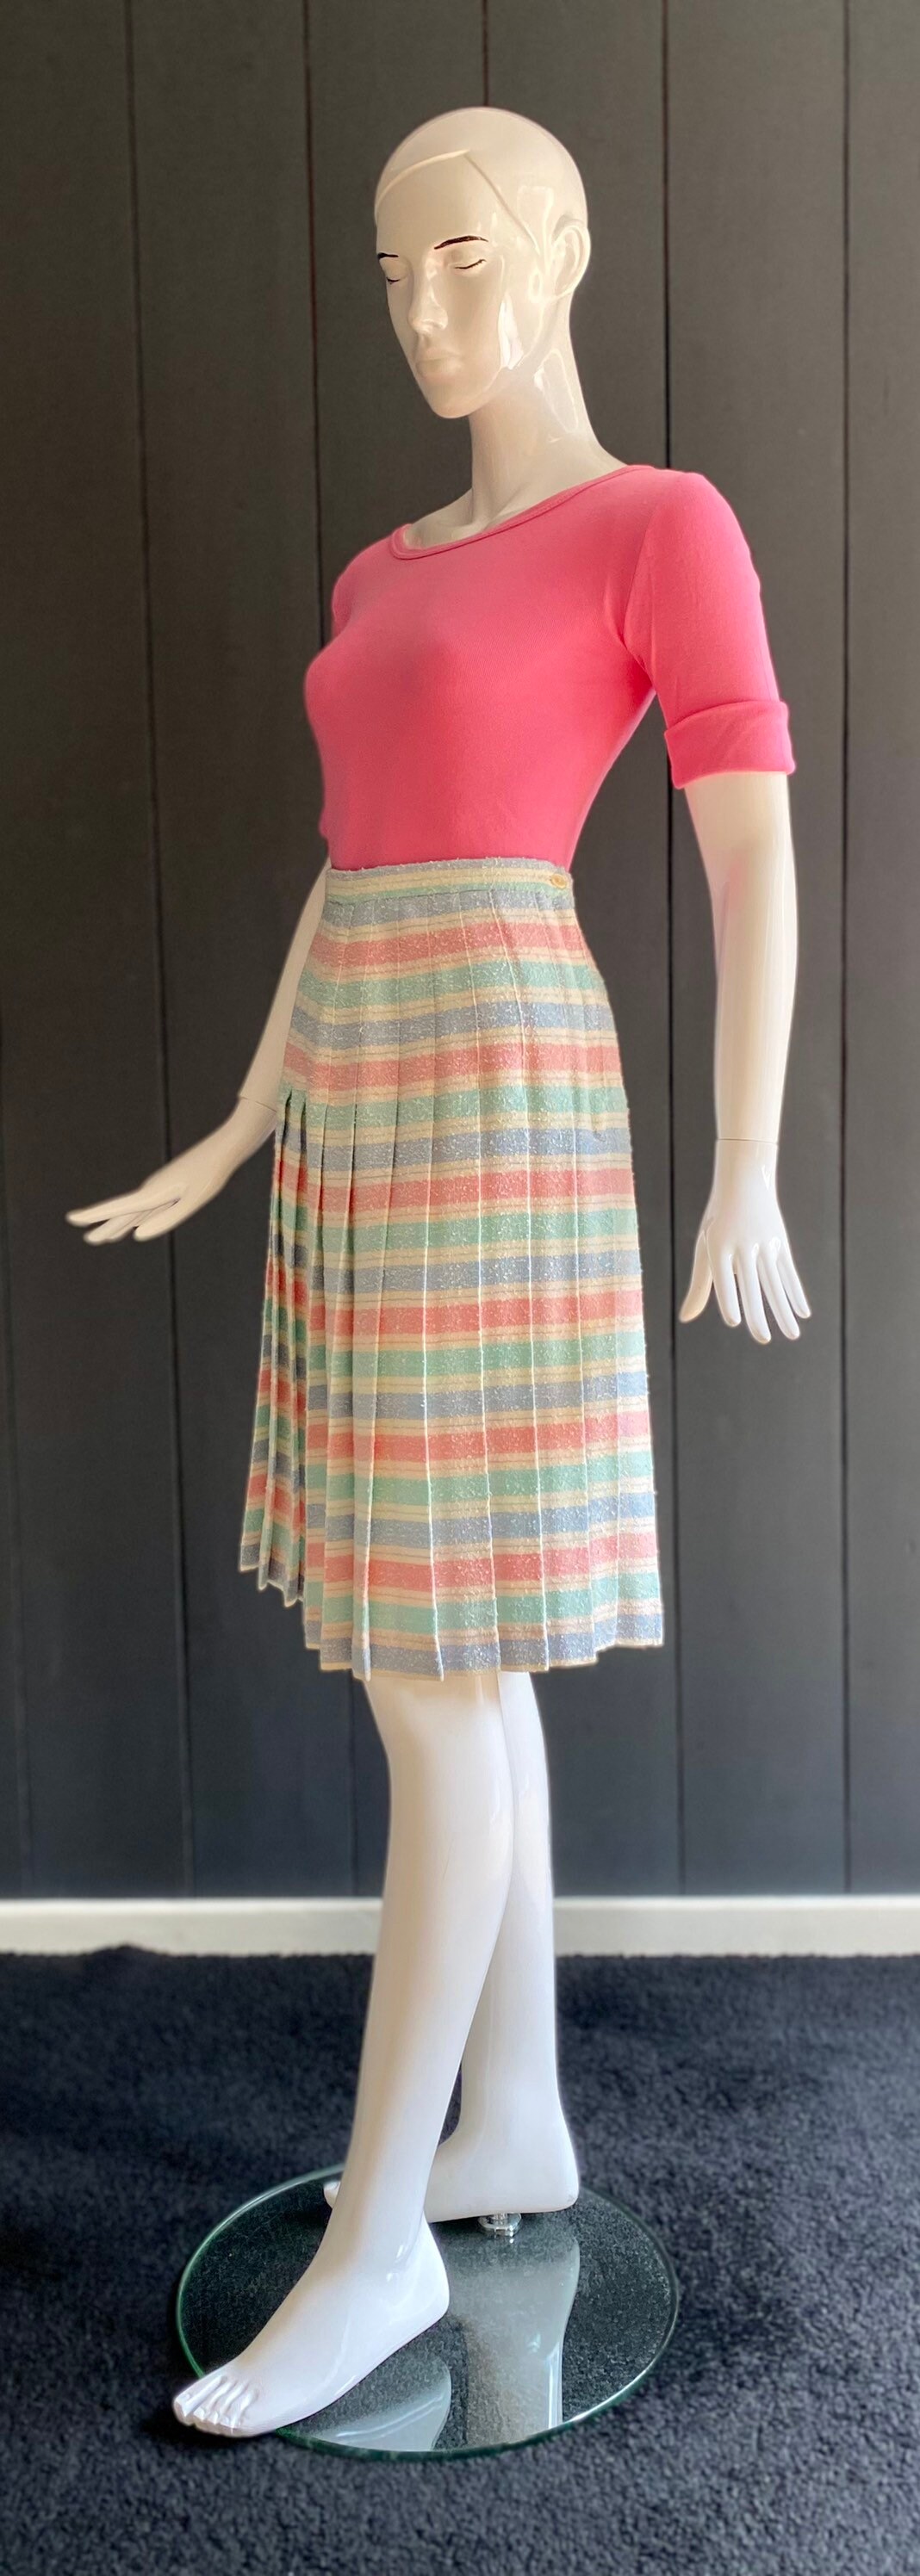 Jupe plissée vintage 70/80s en lainage texturé Vêtements Vêtements femme Jupes motif rayures horizontales aux couleurs pastel T 34/36 